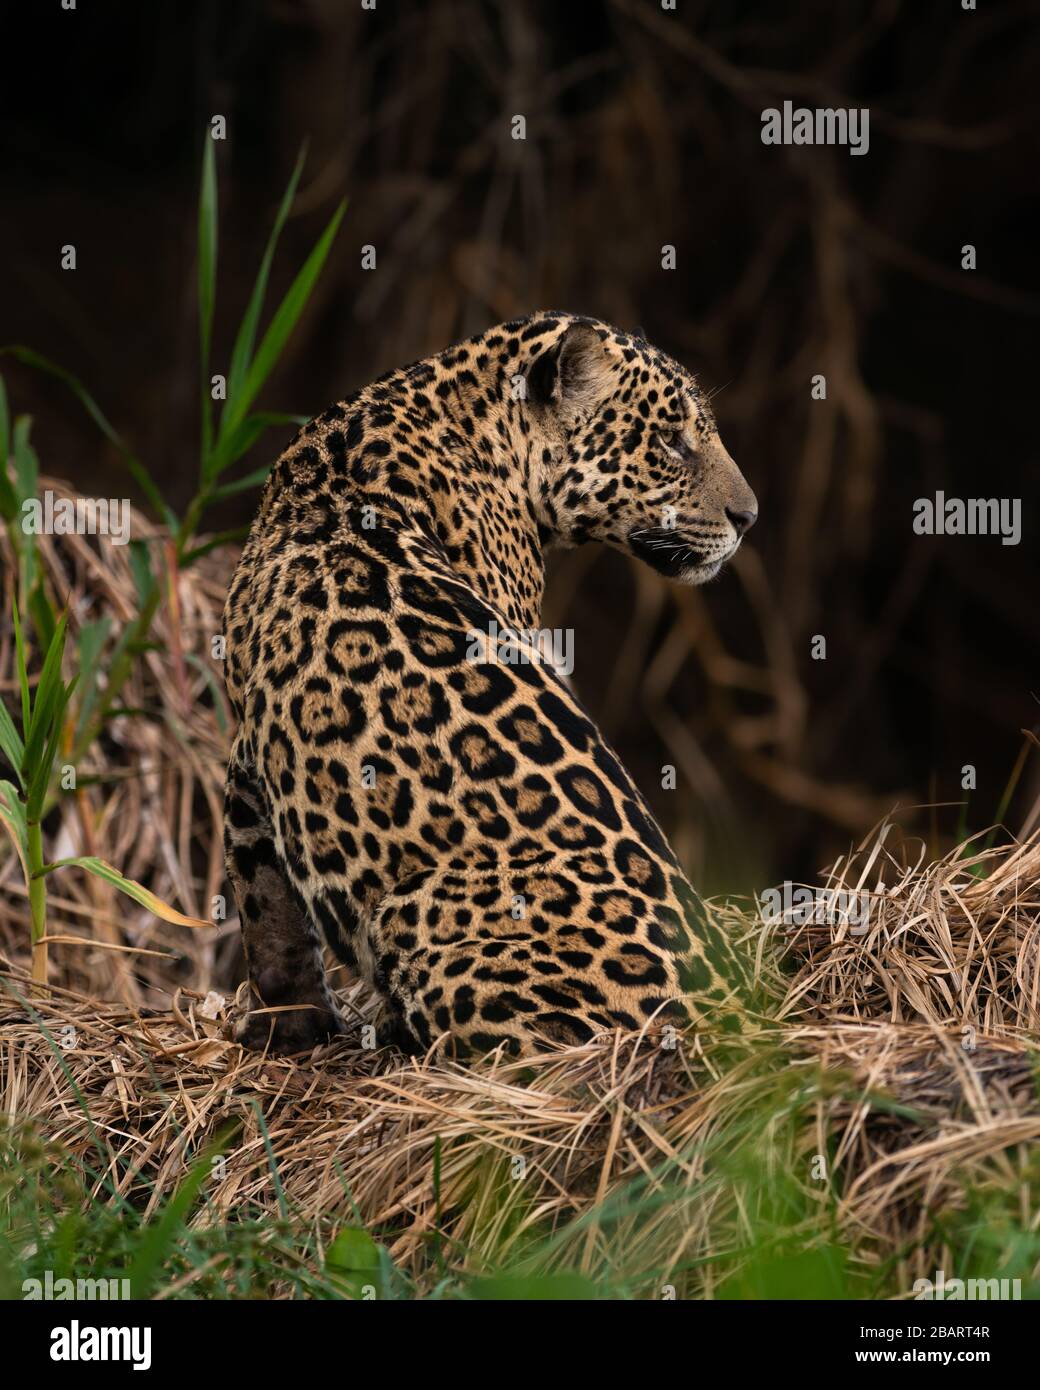 A wild Jaguar (Panthera onca) from the Pantanal of Brazil Stock Photo